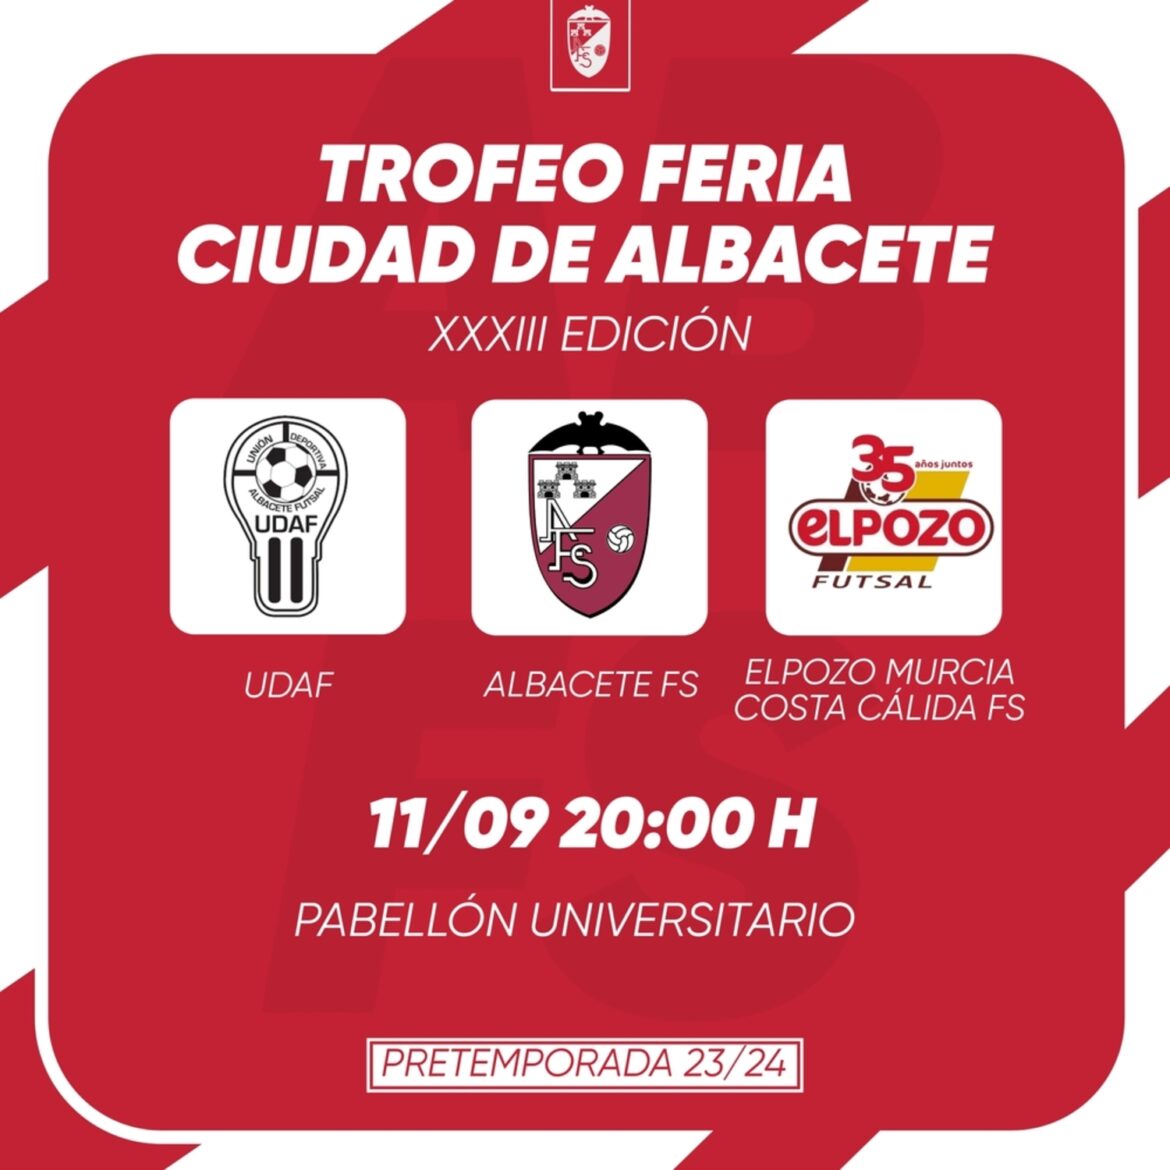 El Trofeo feria de fútbol sala reunirá a Albacete FS, UDAF y El Pozo Murcia